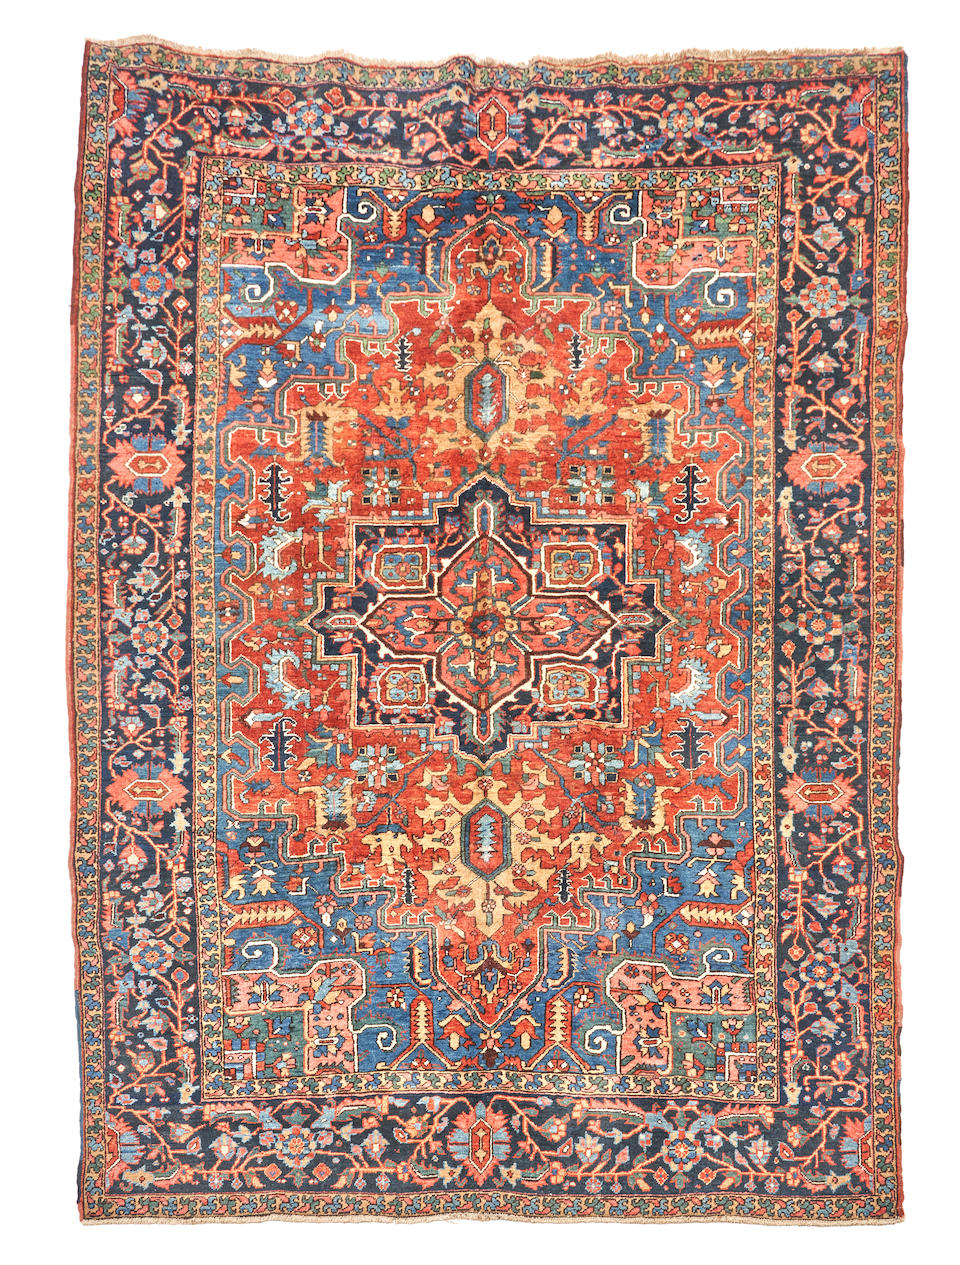 Heriz Carpet Iran 7 ft. 6 in. x 10 ft. 4 in. - Image 2 of 2